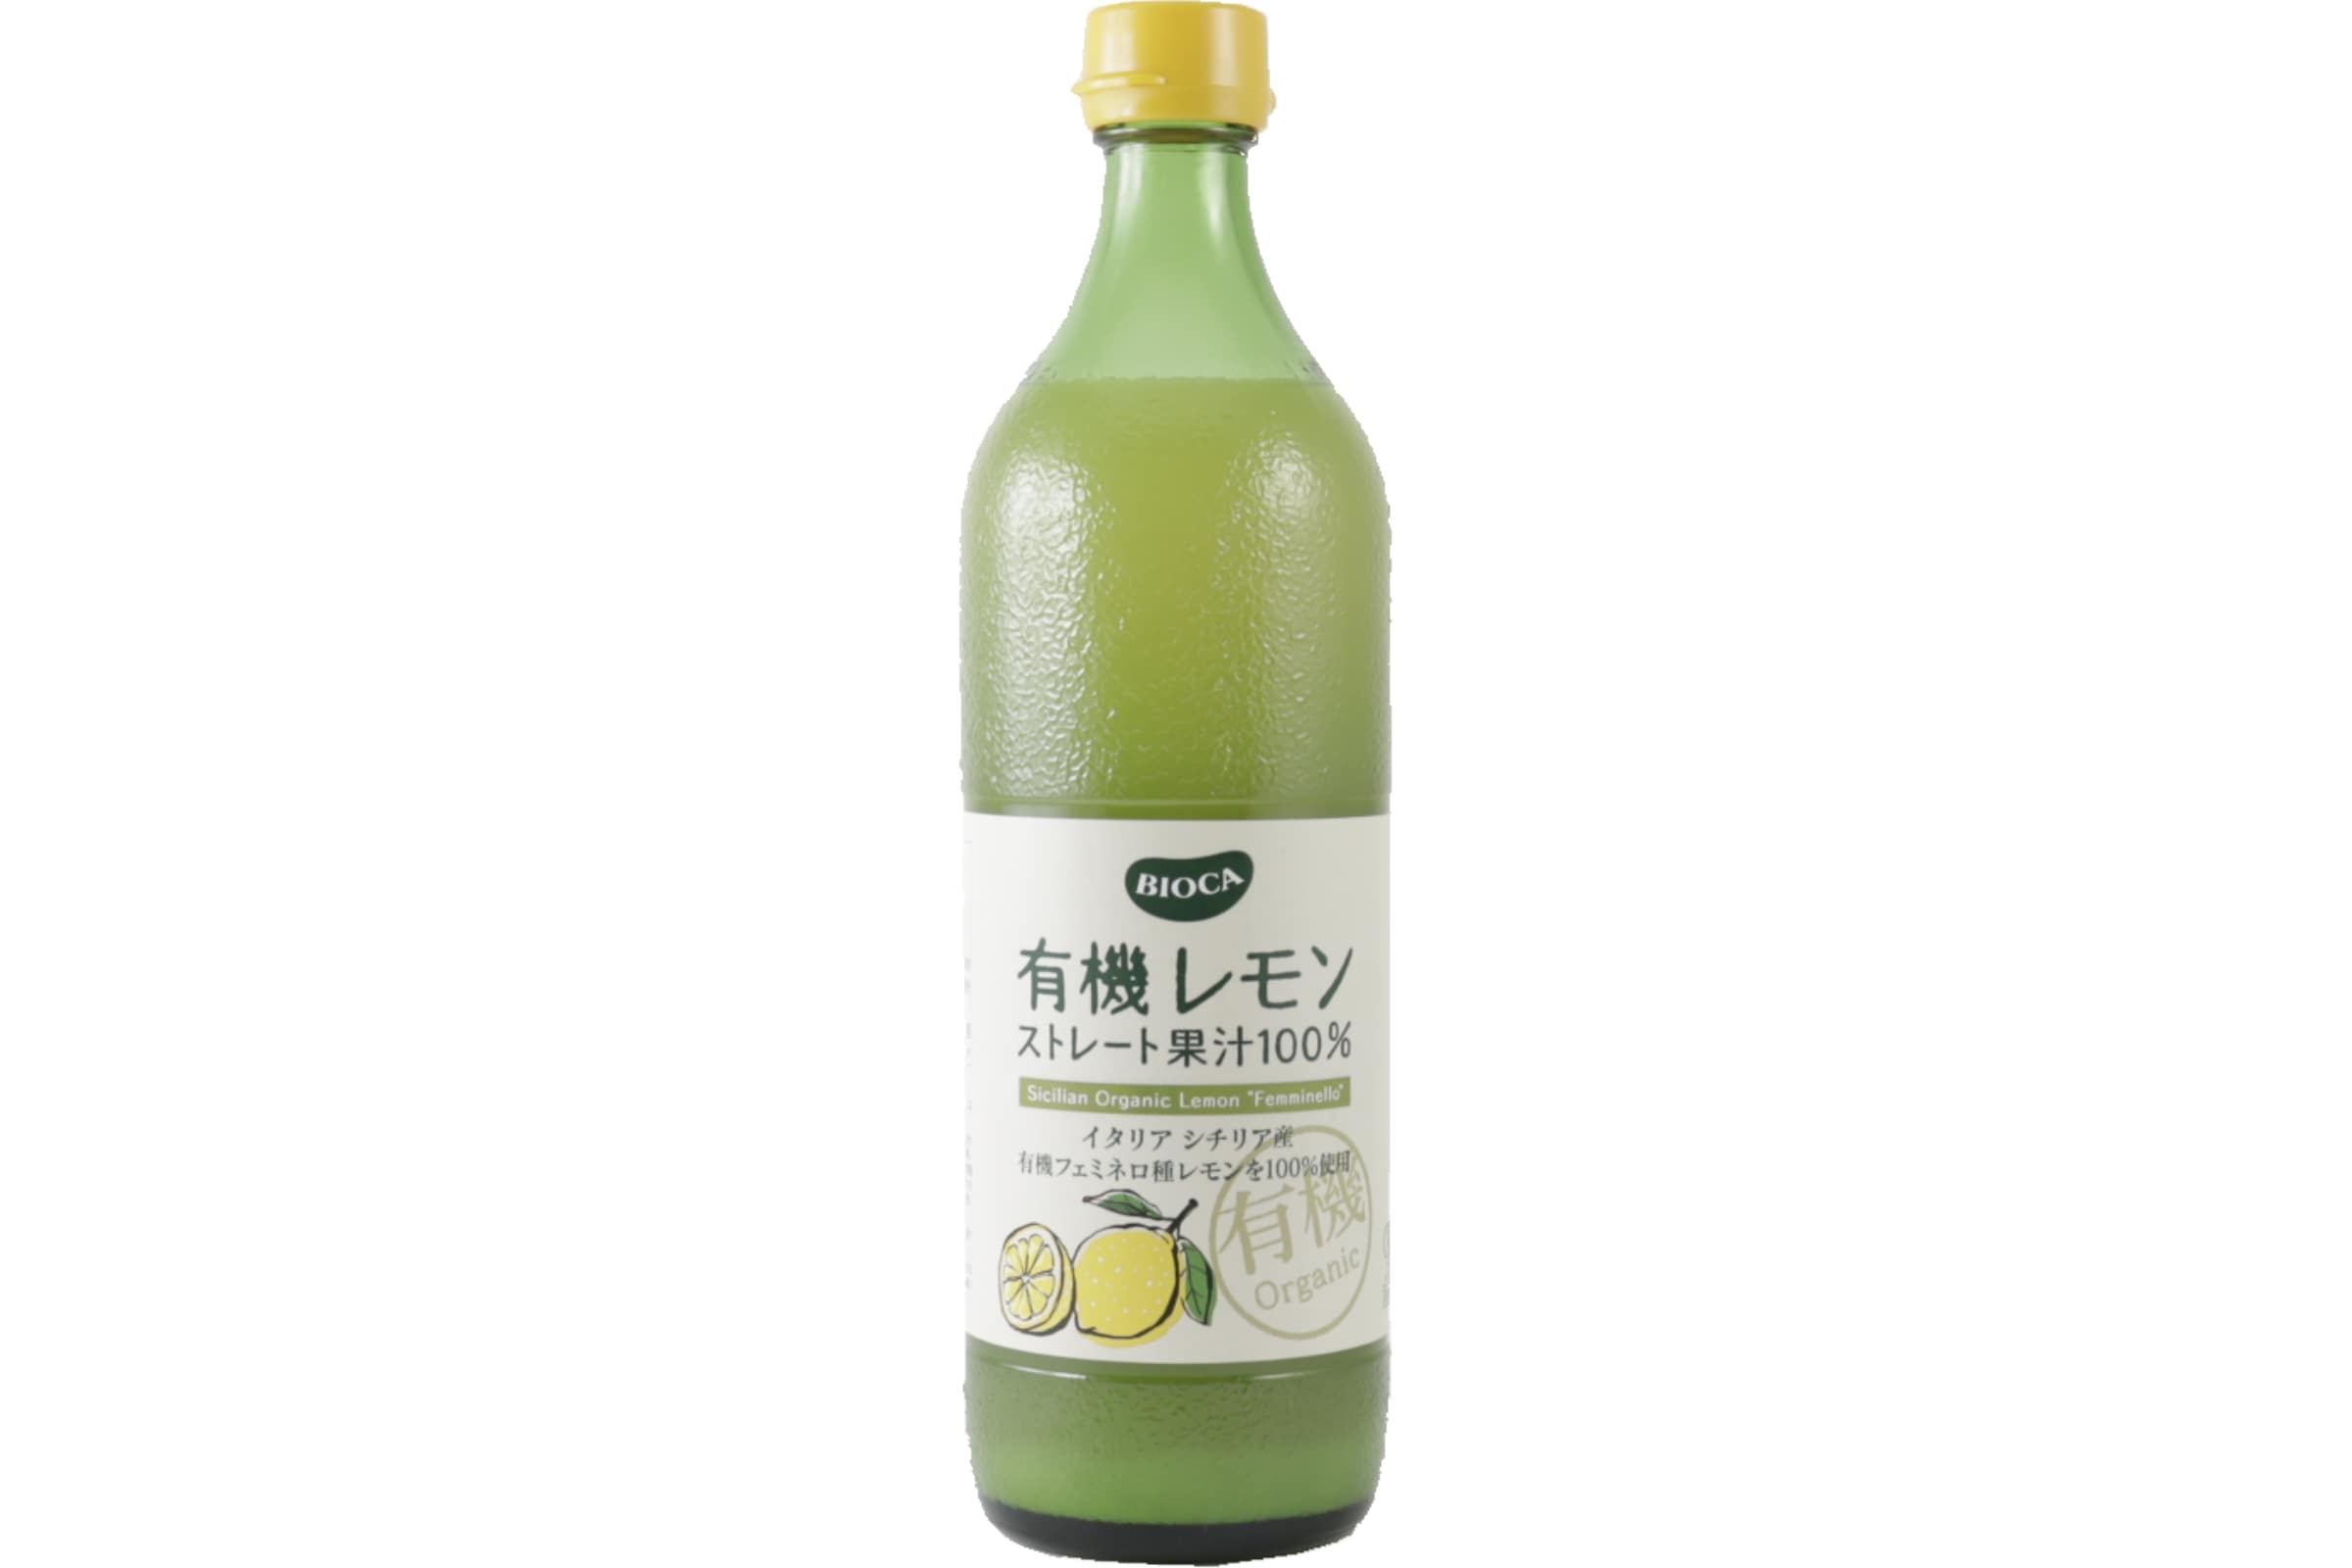 オーガニック・レモン果汁